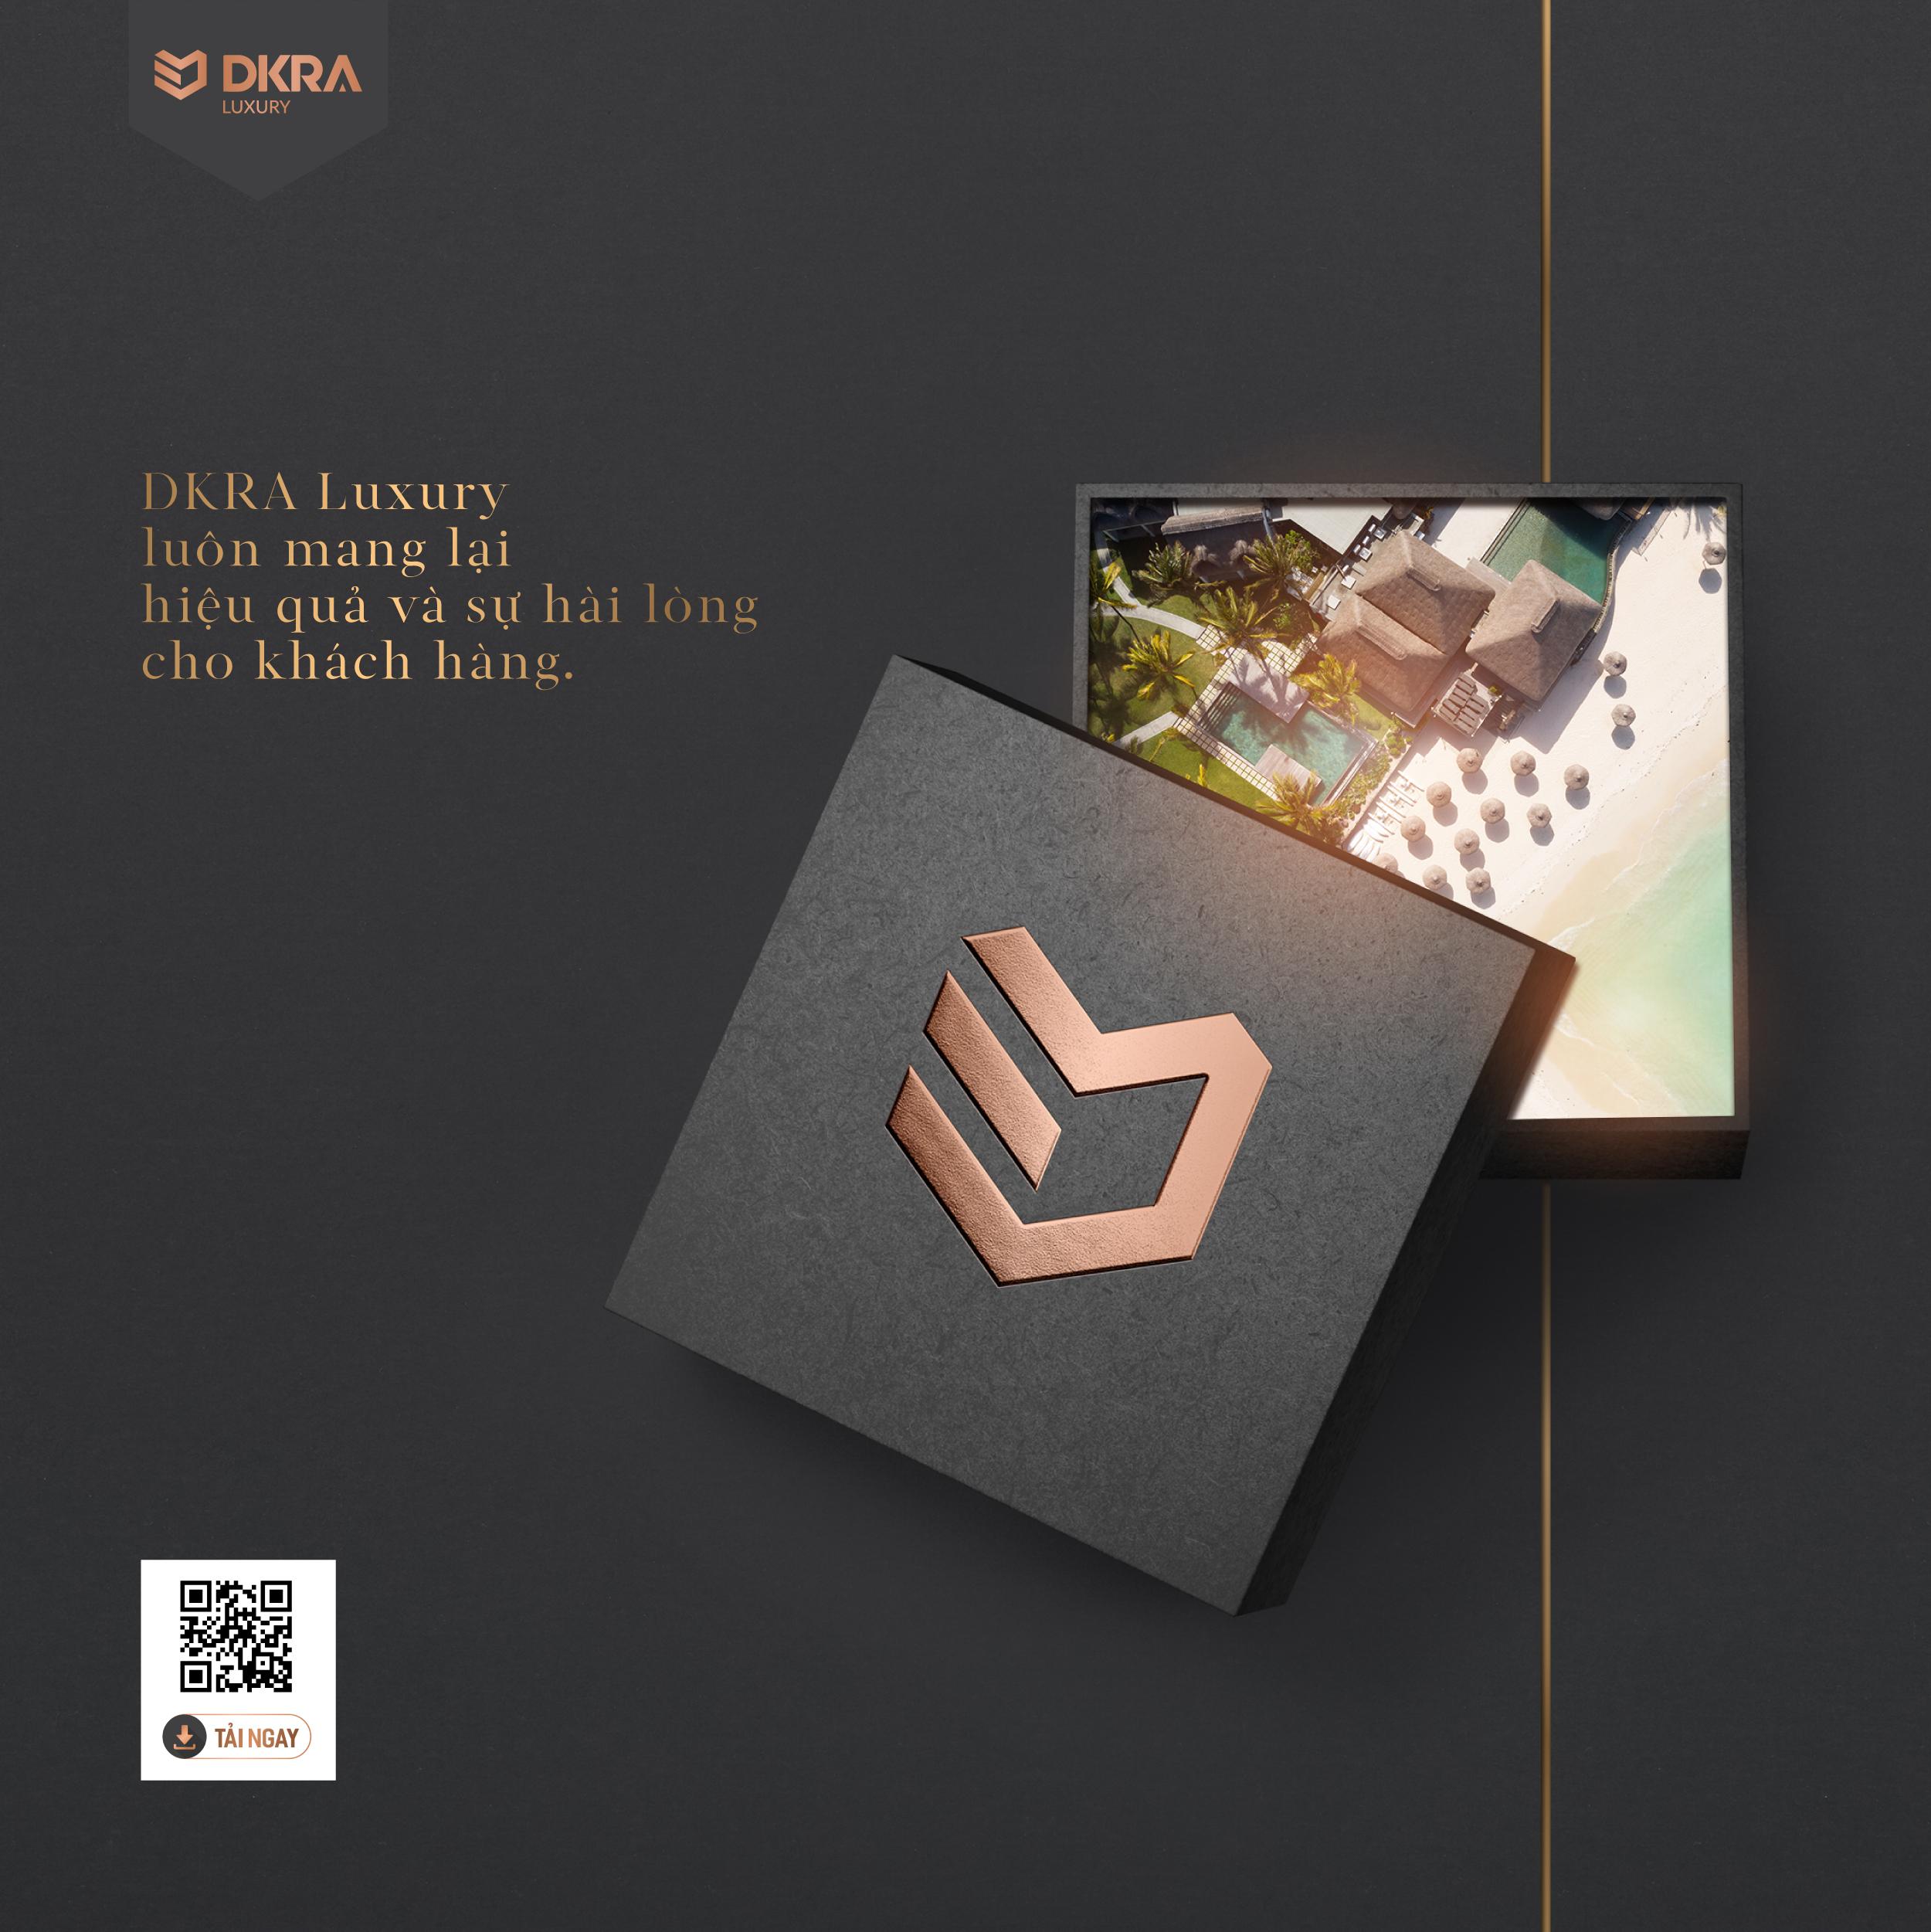 DKRA Luxury luôn mang lại hiệu quả và sự hài lòng cho khách hàng